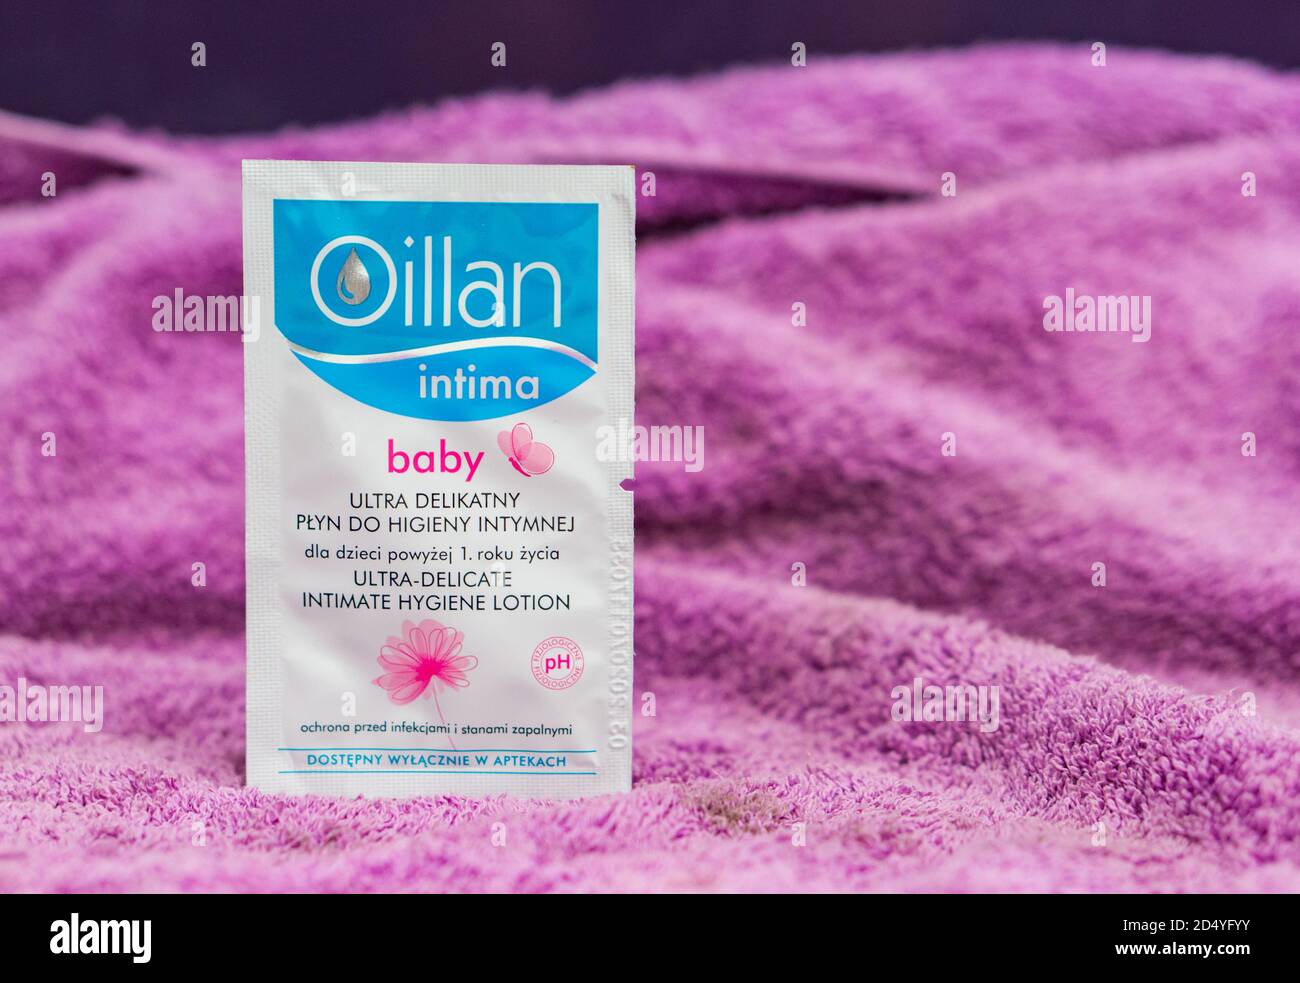 POZNAN, POLOGNE - 18 janvier 2018 : huile pour la peau de bébé Oillan Intima dans un petit test ba Banque D'Images